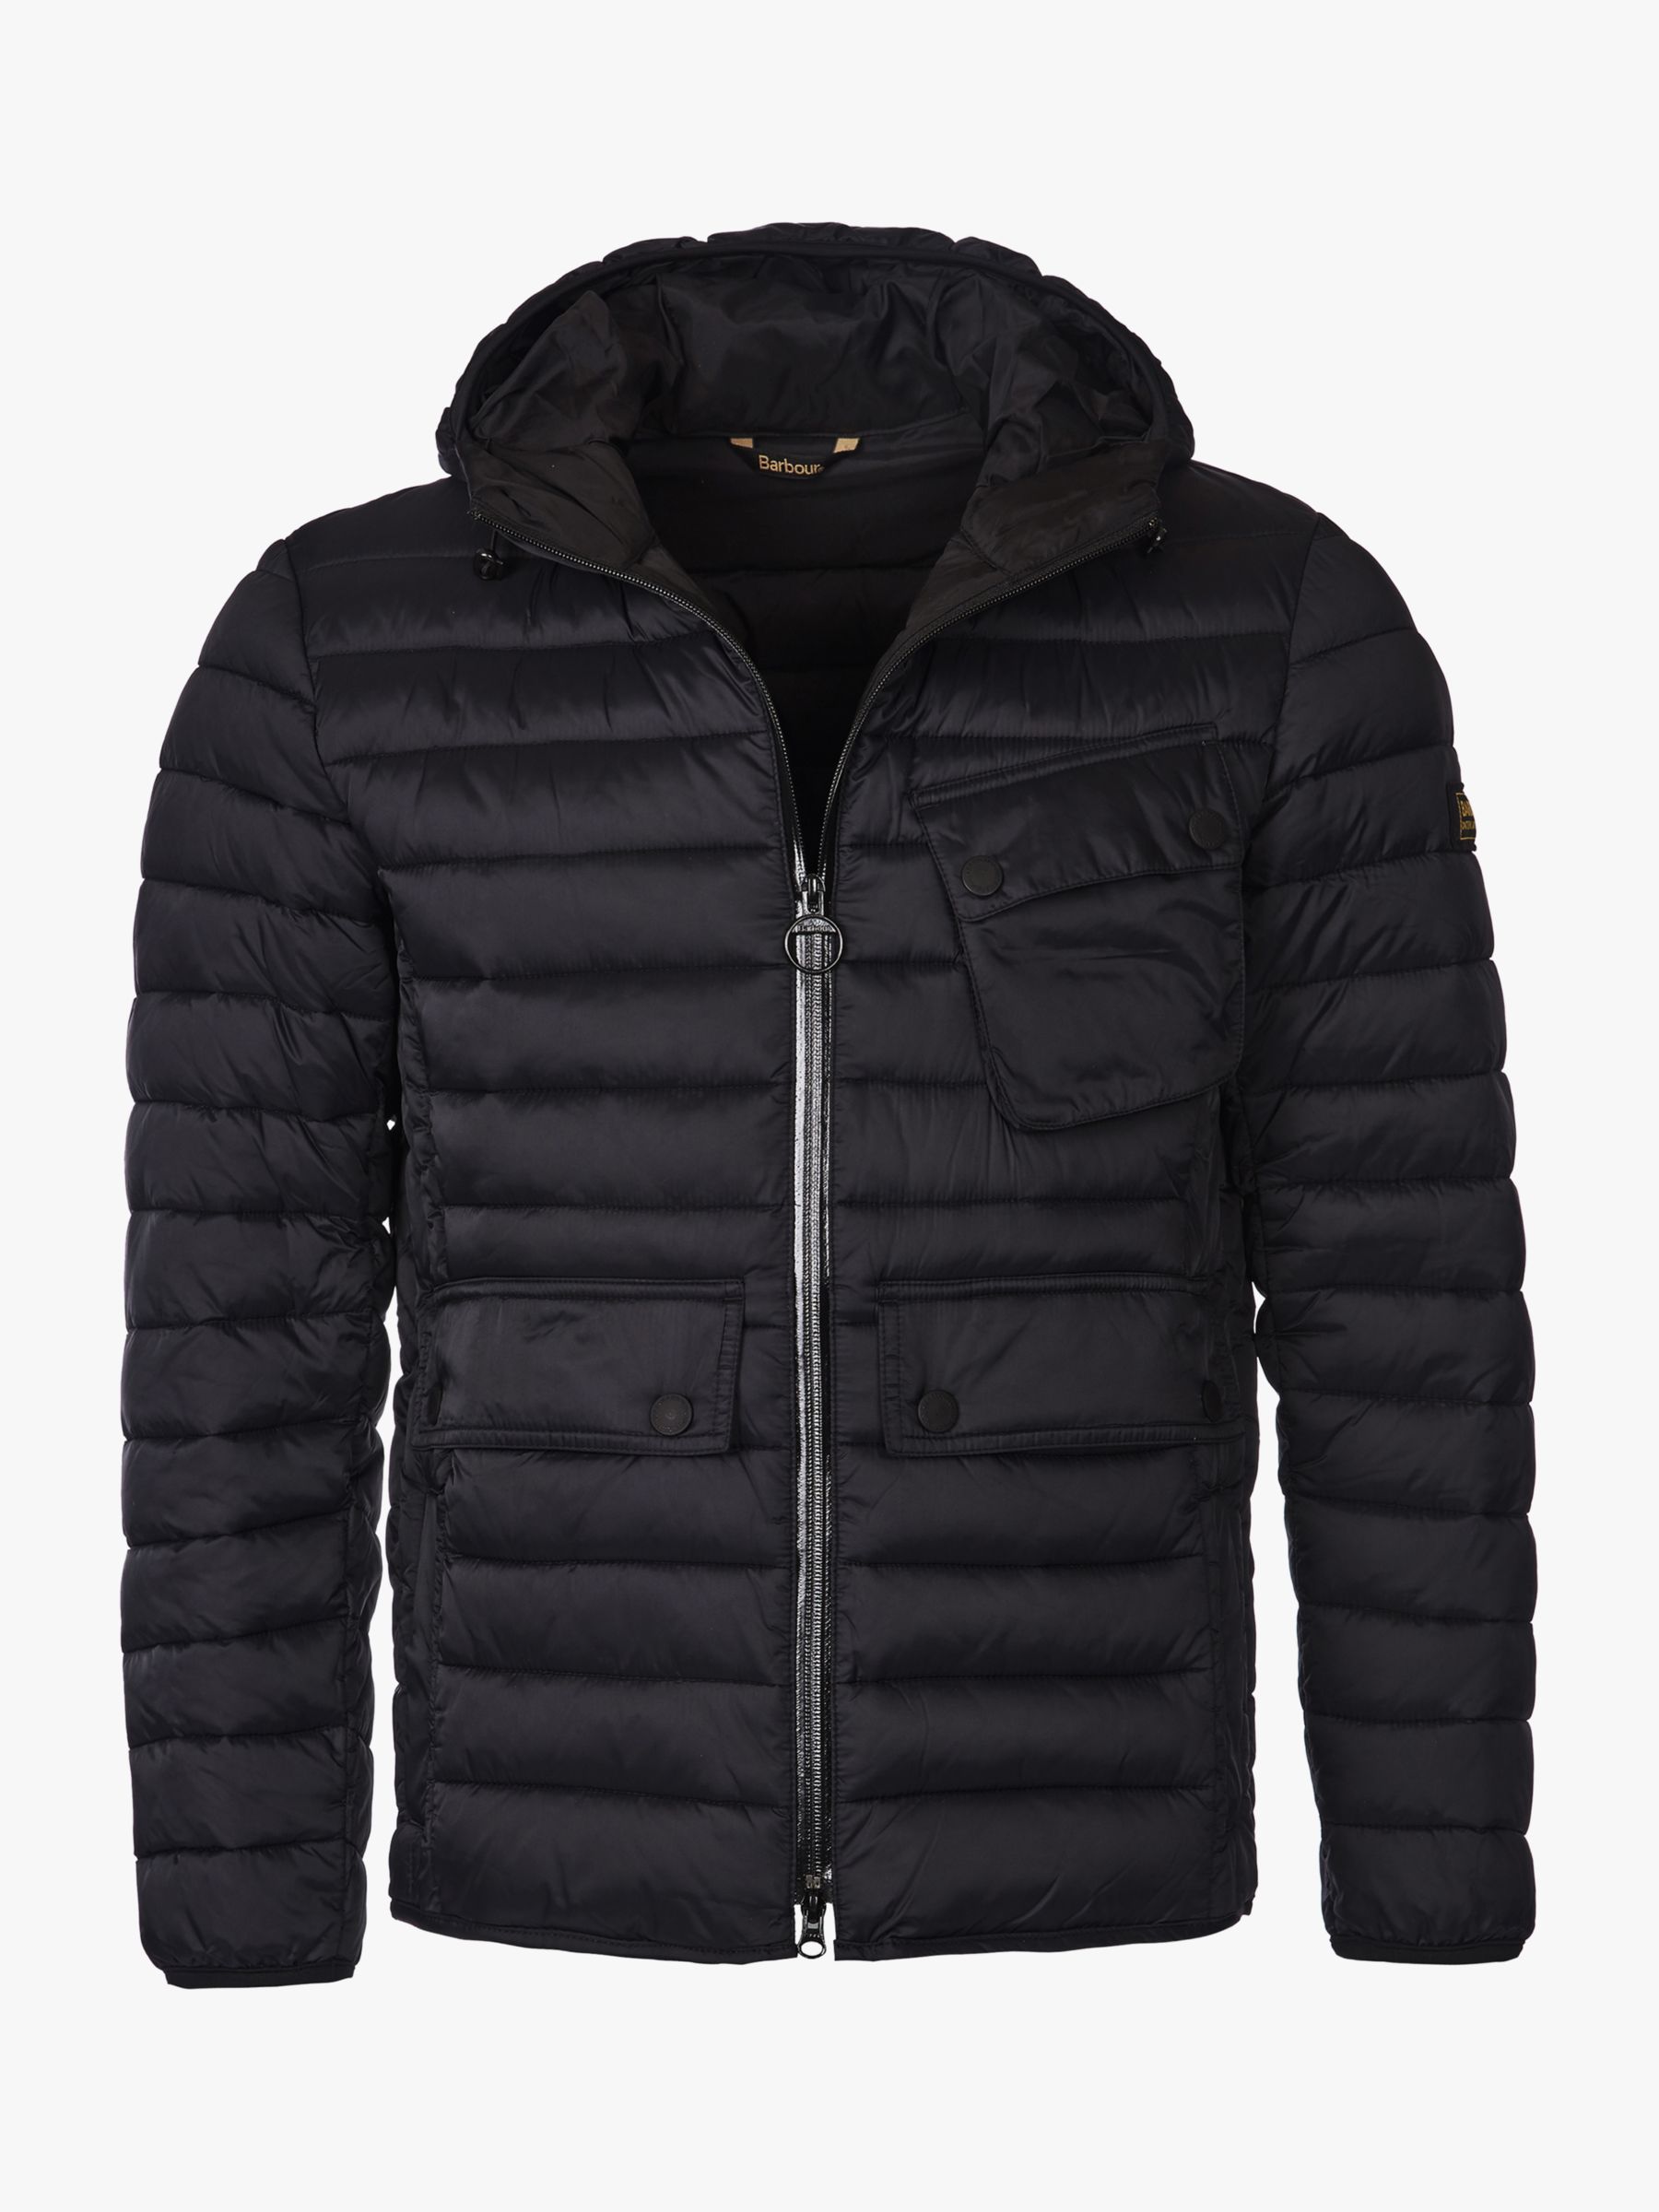 Buy Barbour International Ouston Slim Fit Padded Jacket, Black Online at johnlewis.com